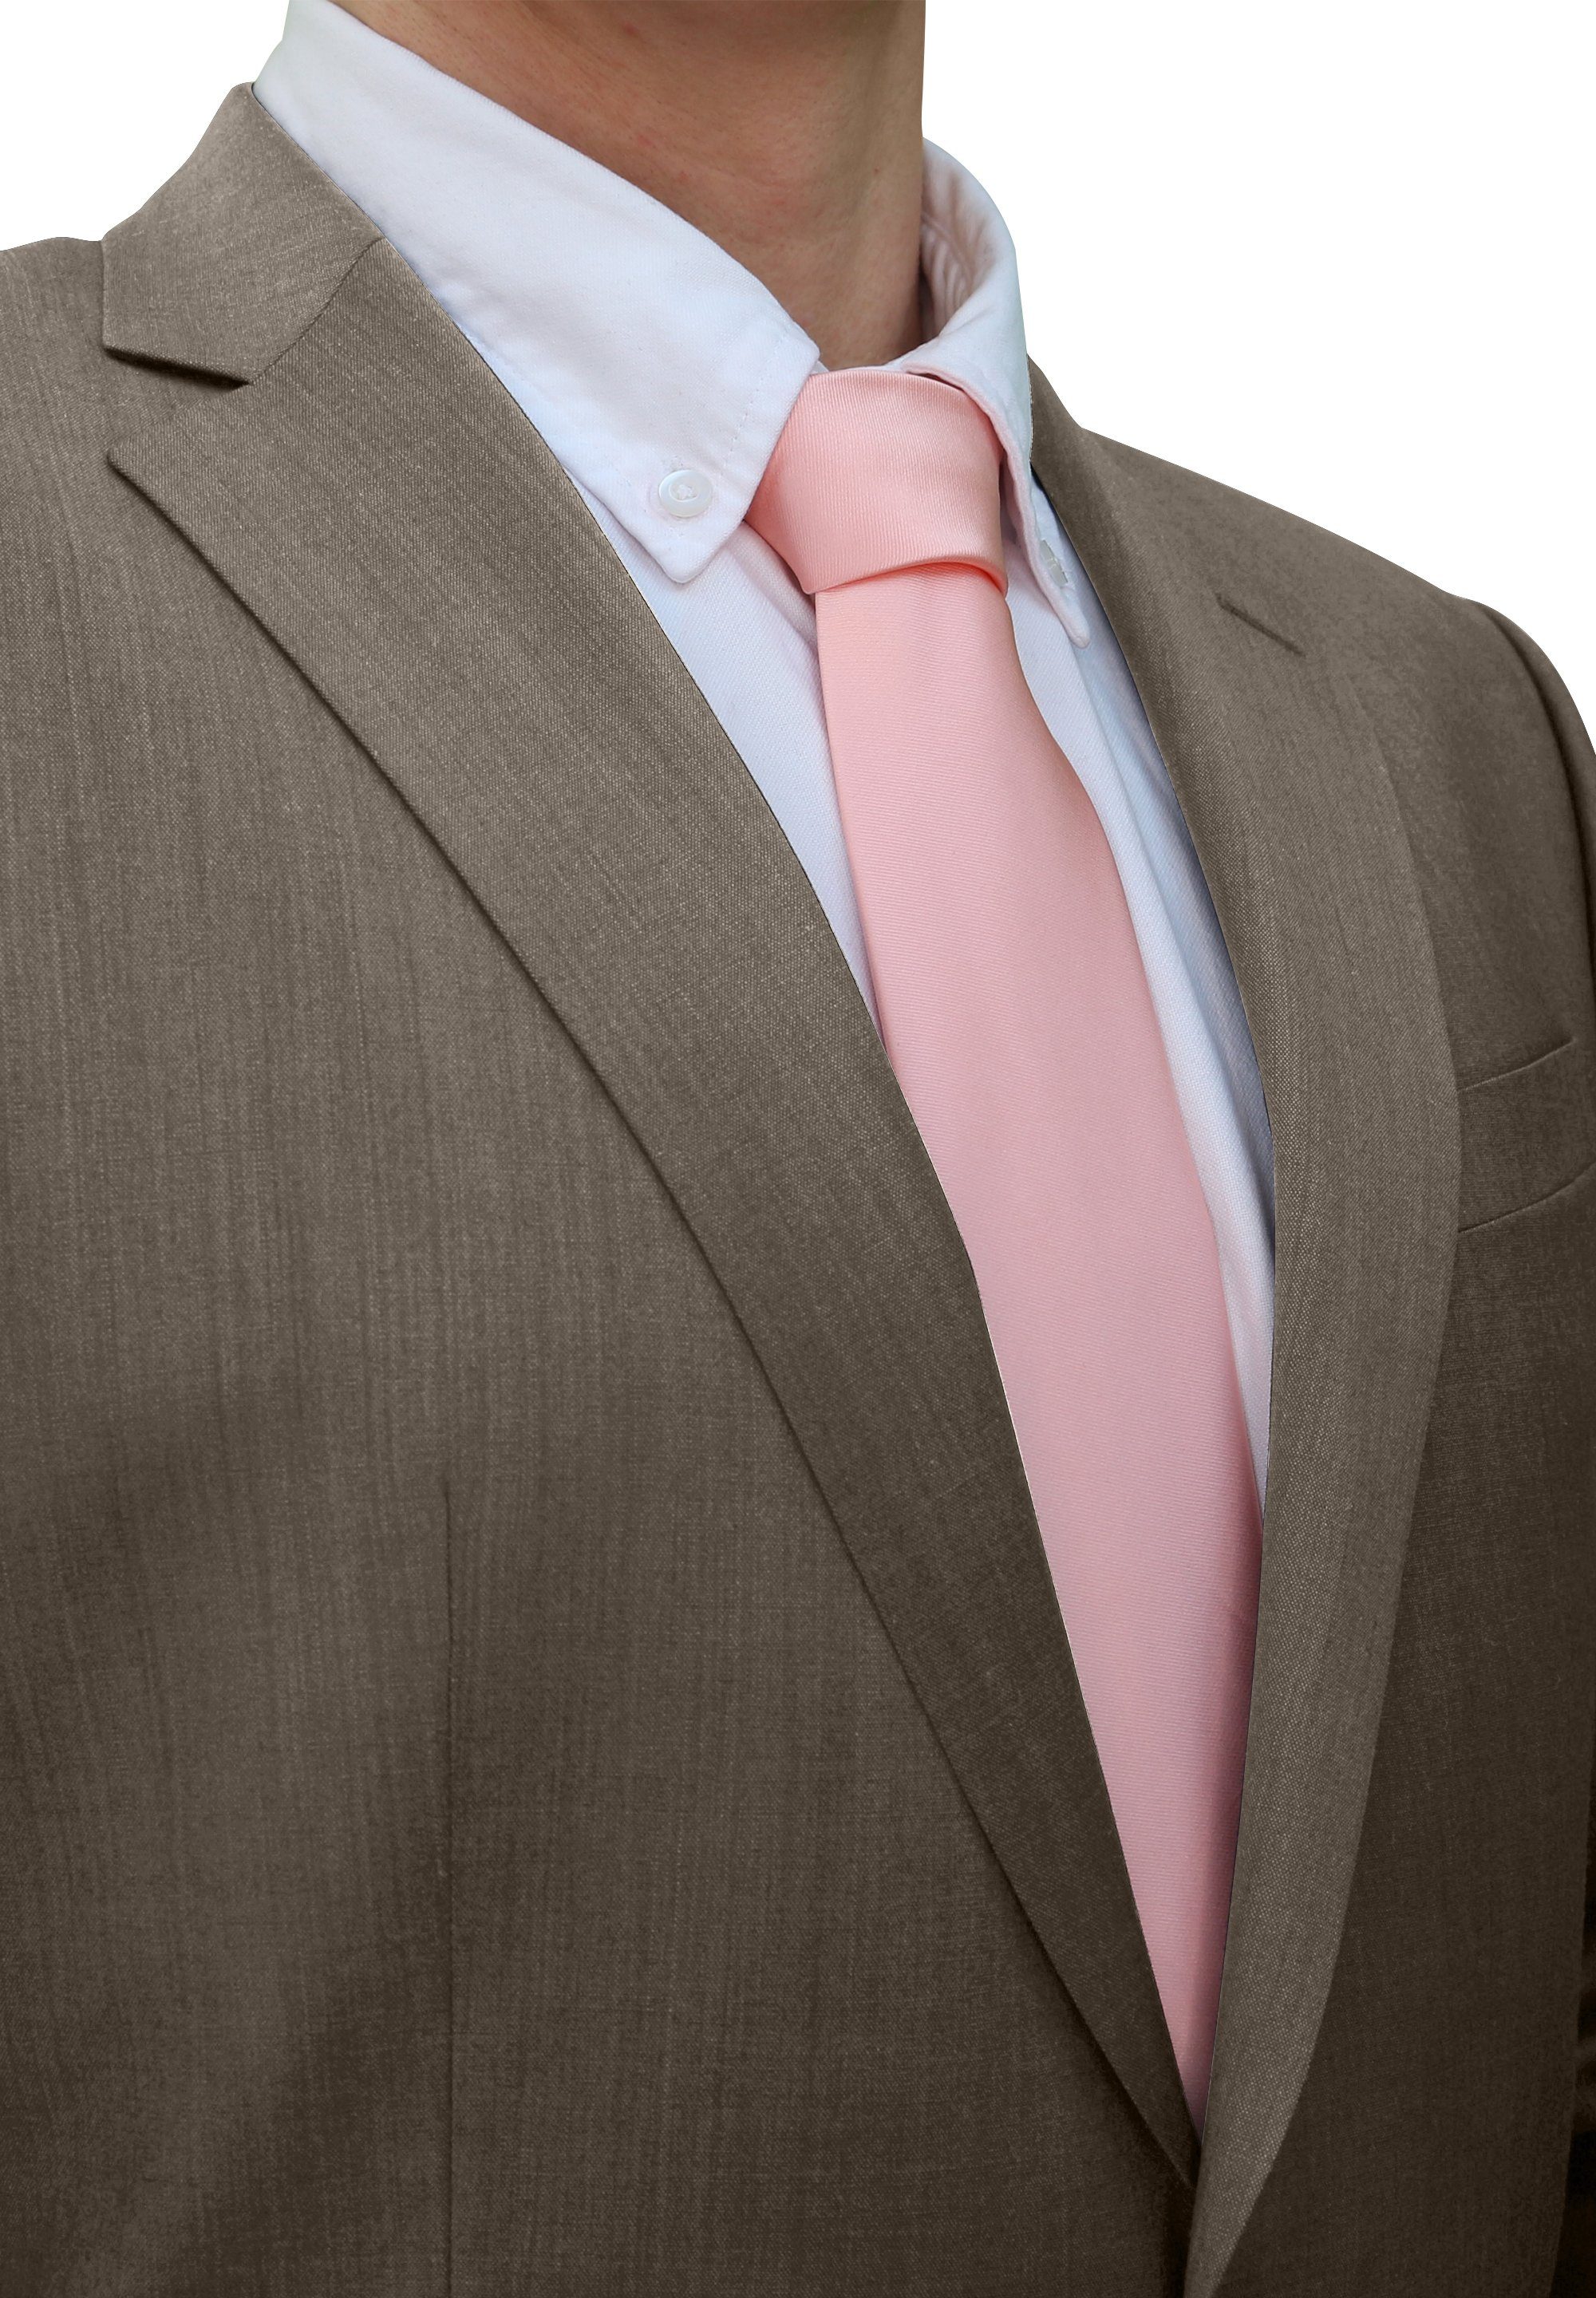 Fabio Farini Krawatte einfarbige Herren Schlips - Unicolor Krawatte in 6cm oder 8cm Breite (Unifarben) Breit (8cm), Lachsrosa perfekt als Geschenk